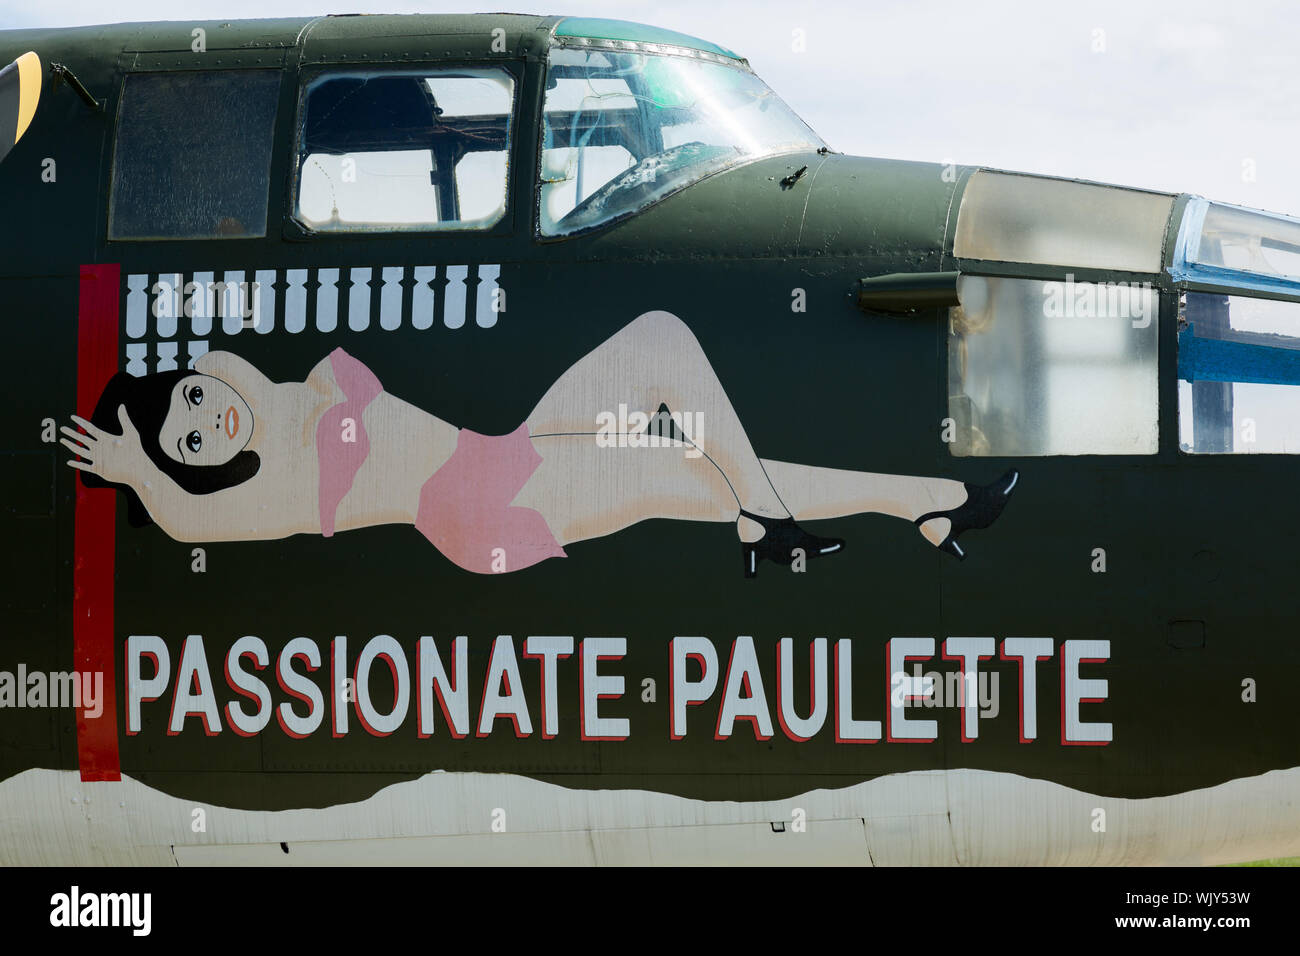 Die B-25 Bomber aus dem Film "Catch-22", bekannt als leidenschaftliche Paulette, ist auf static Display an der Grissom Air Museum in Bunker Hill, Indiana, USA. Stockfoto